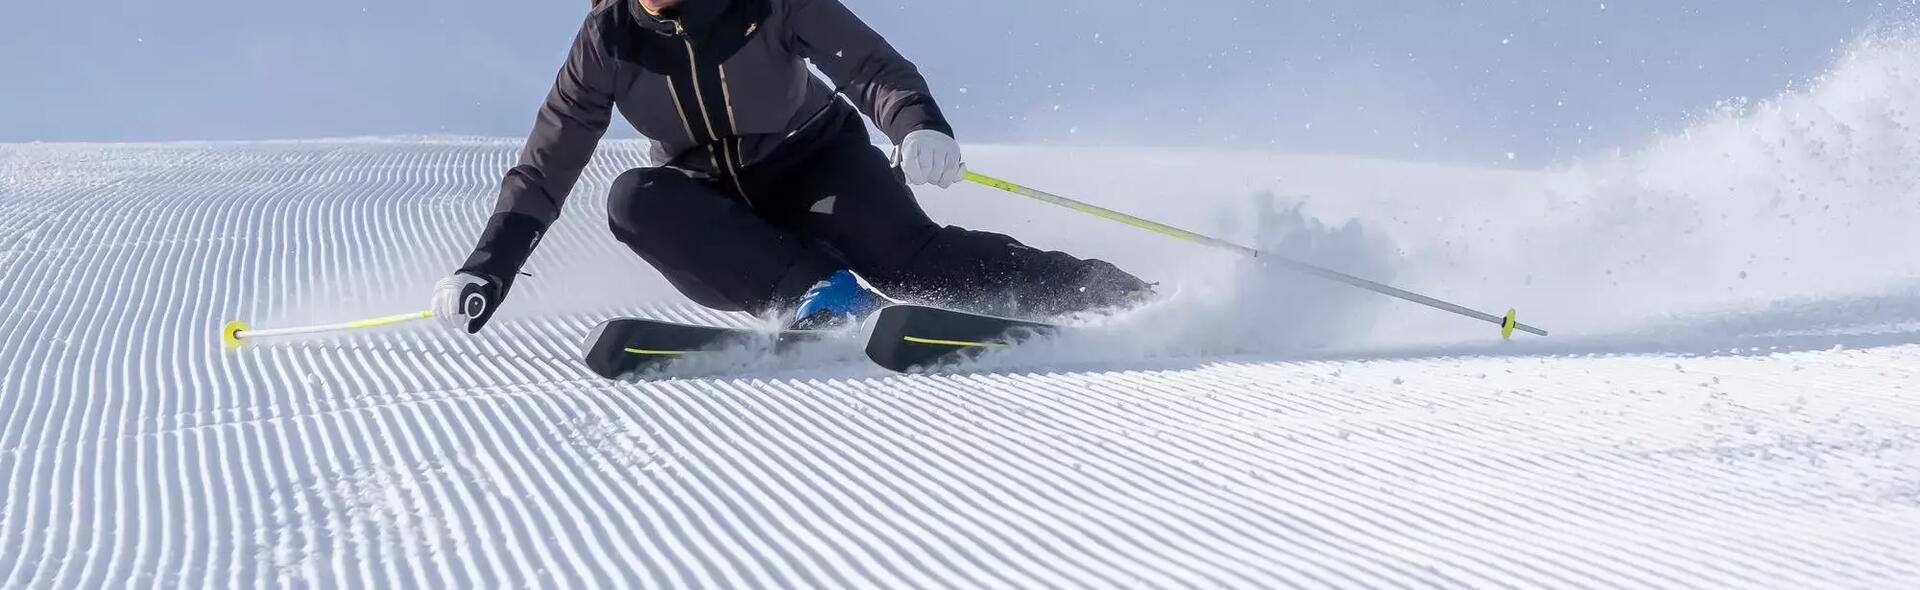 Qu'est ce que le carving en ski, et comment réussir à carver ?